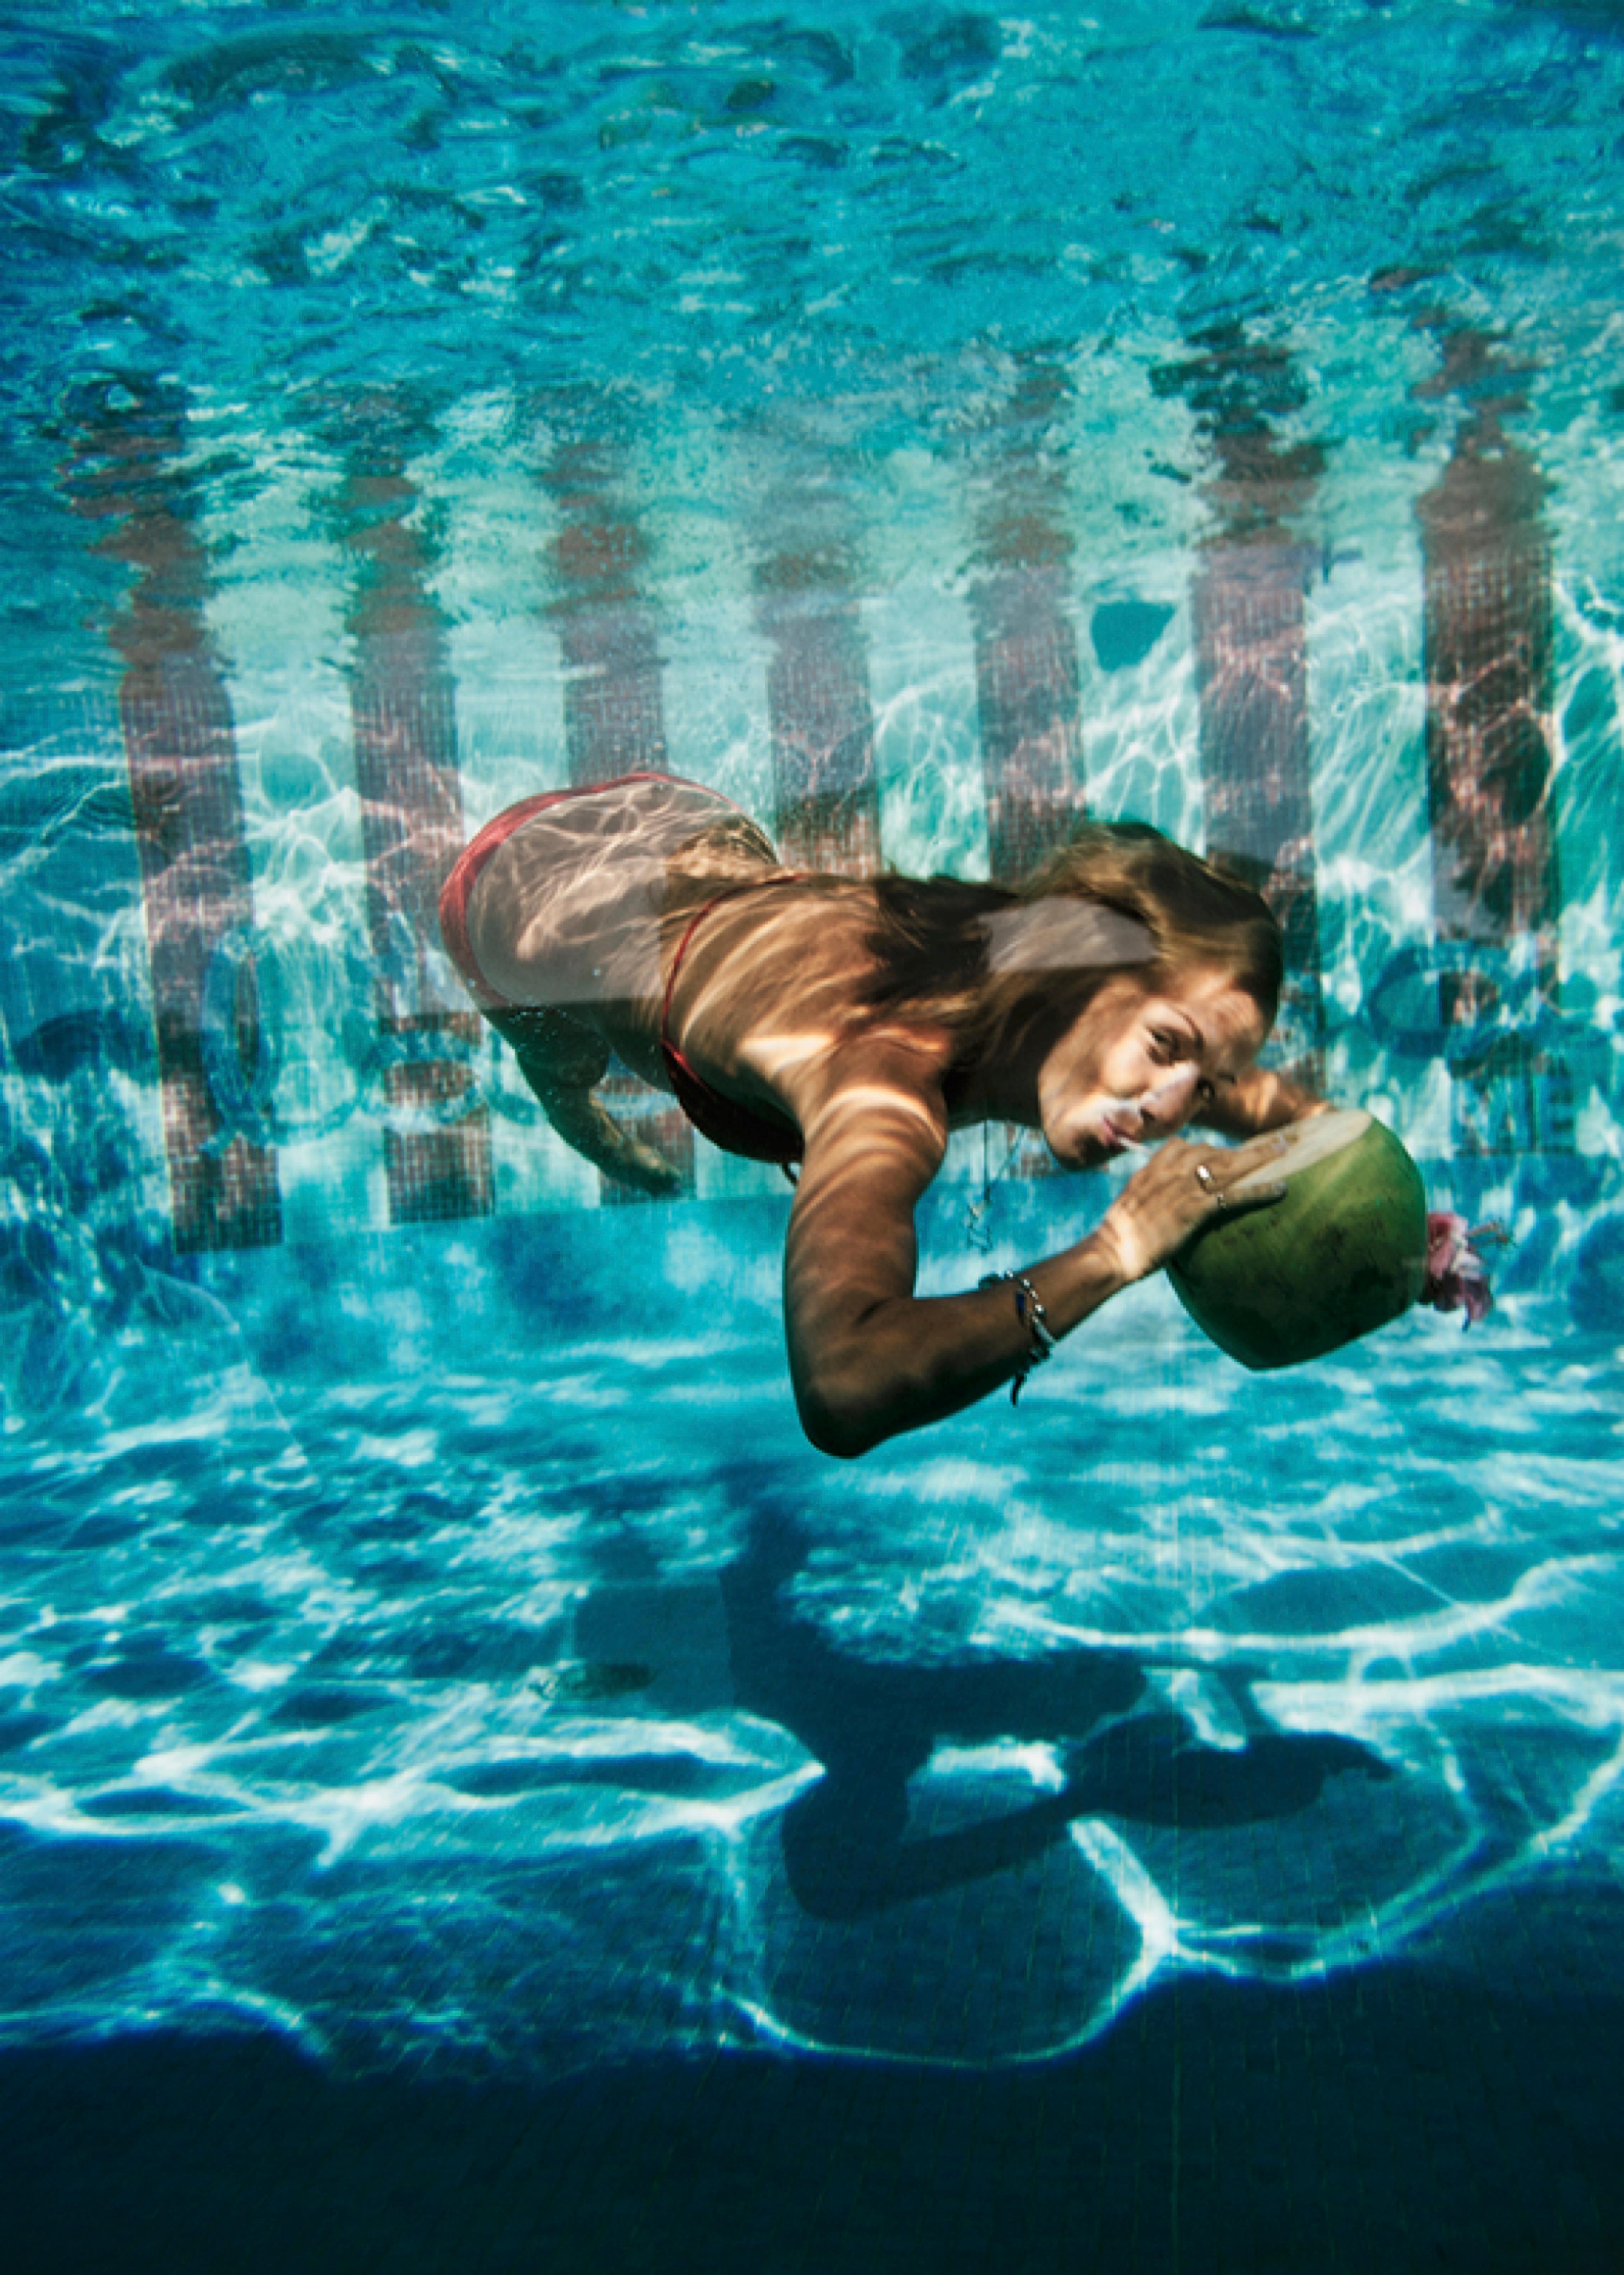 Unterwasser-Getränk

1972

 Eine Frau trinkt aus einer Kokosnuss unter Wasser im Pool des Hotels Las Brisas in Acapulco, Mexiko, Februar 1972.

Von Slim Aarons

60 x 40" / 152 x 101 cm - Papierformat 
C-Typ Druck
ungerahmt 

Nachlassgestempelte